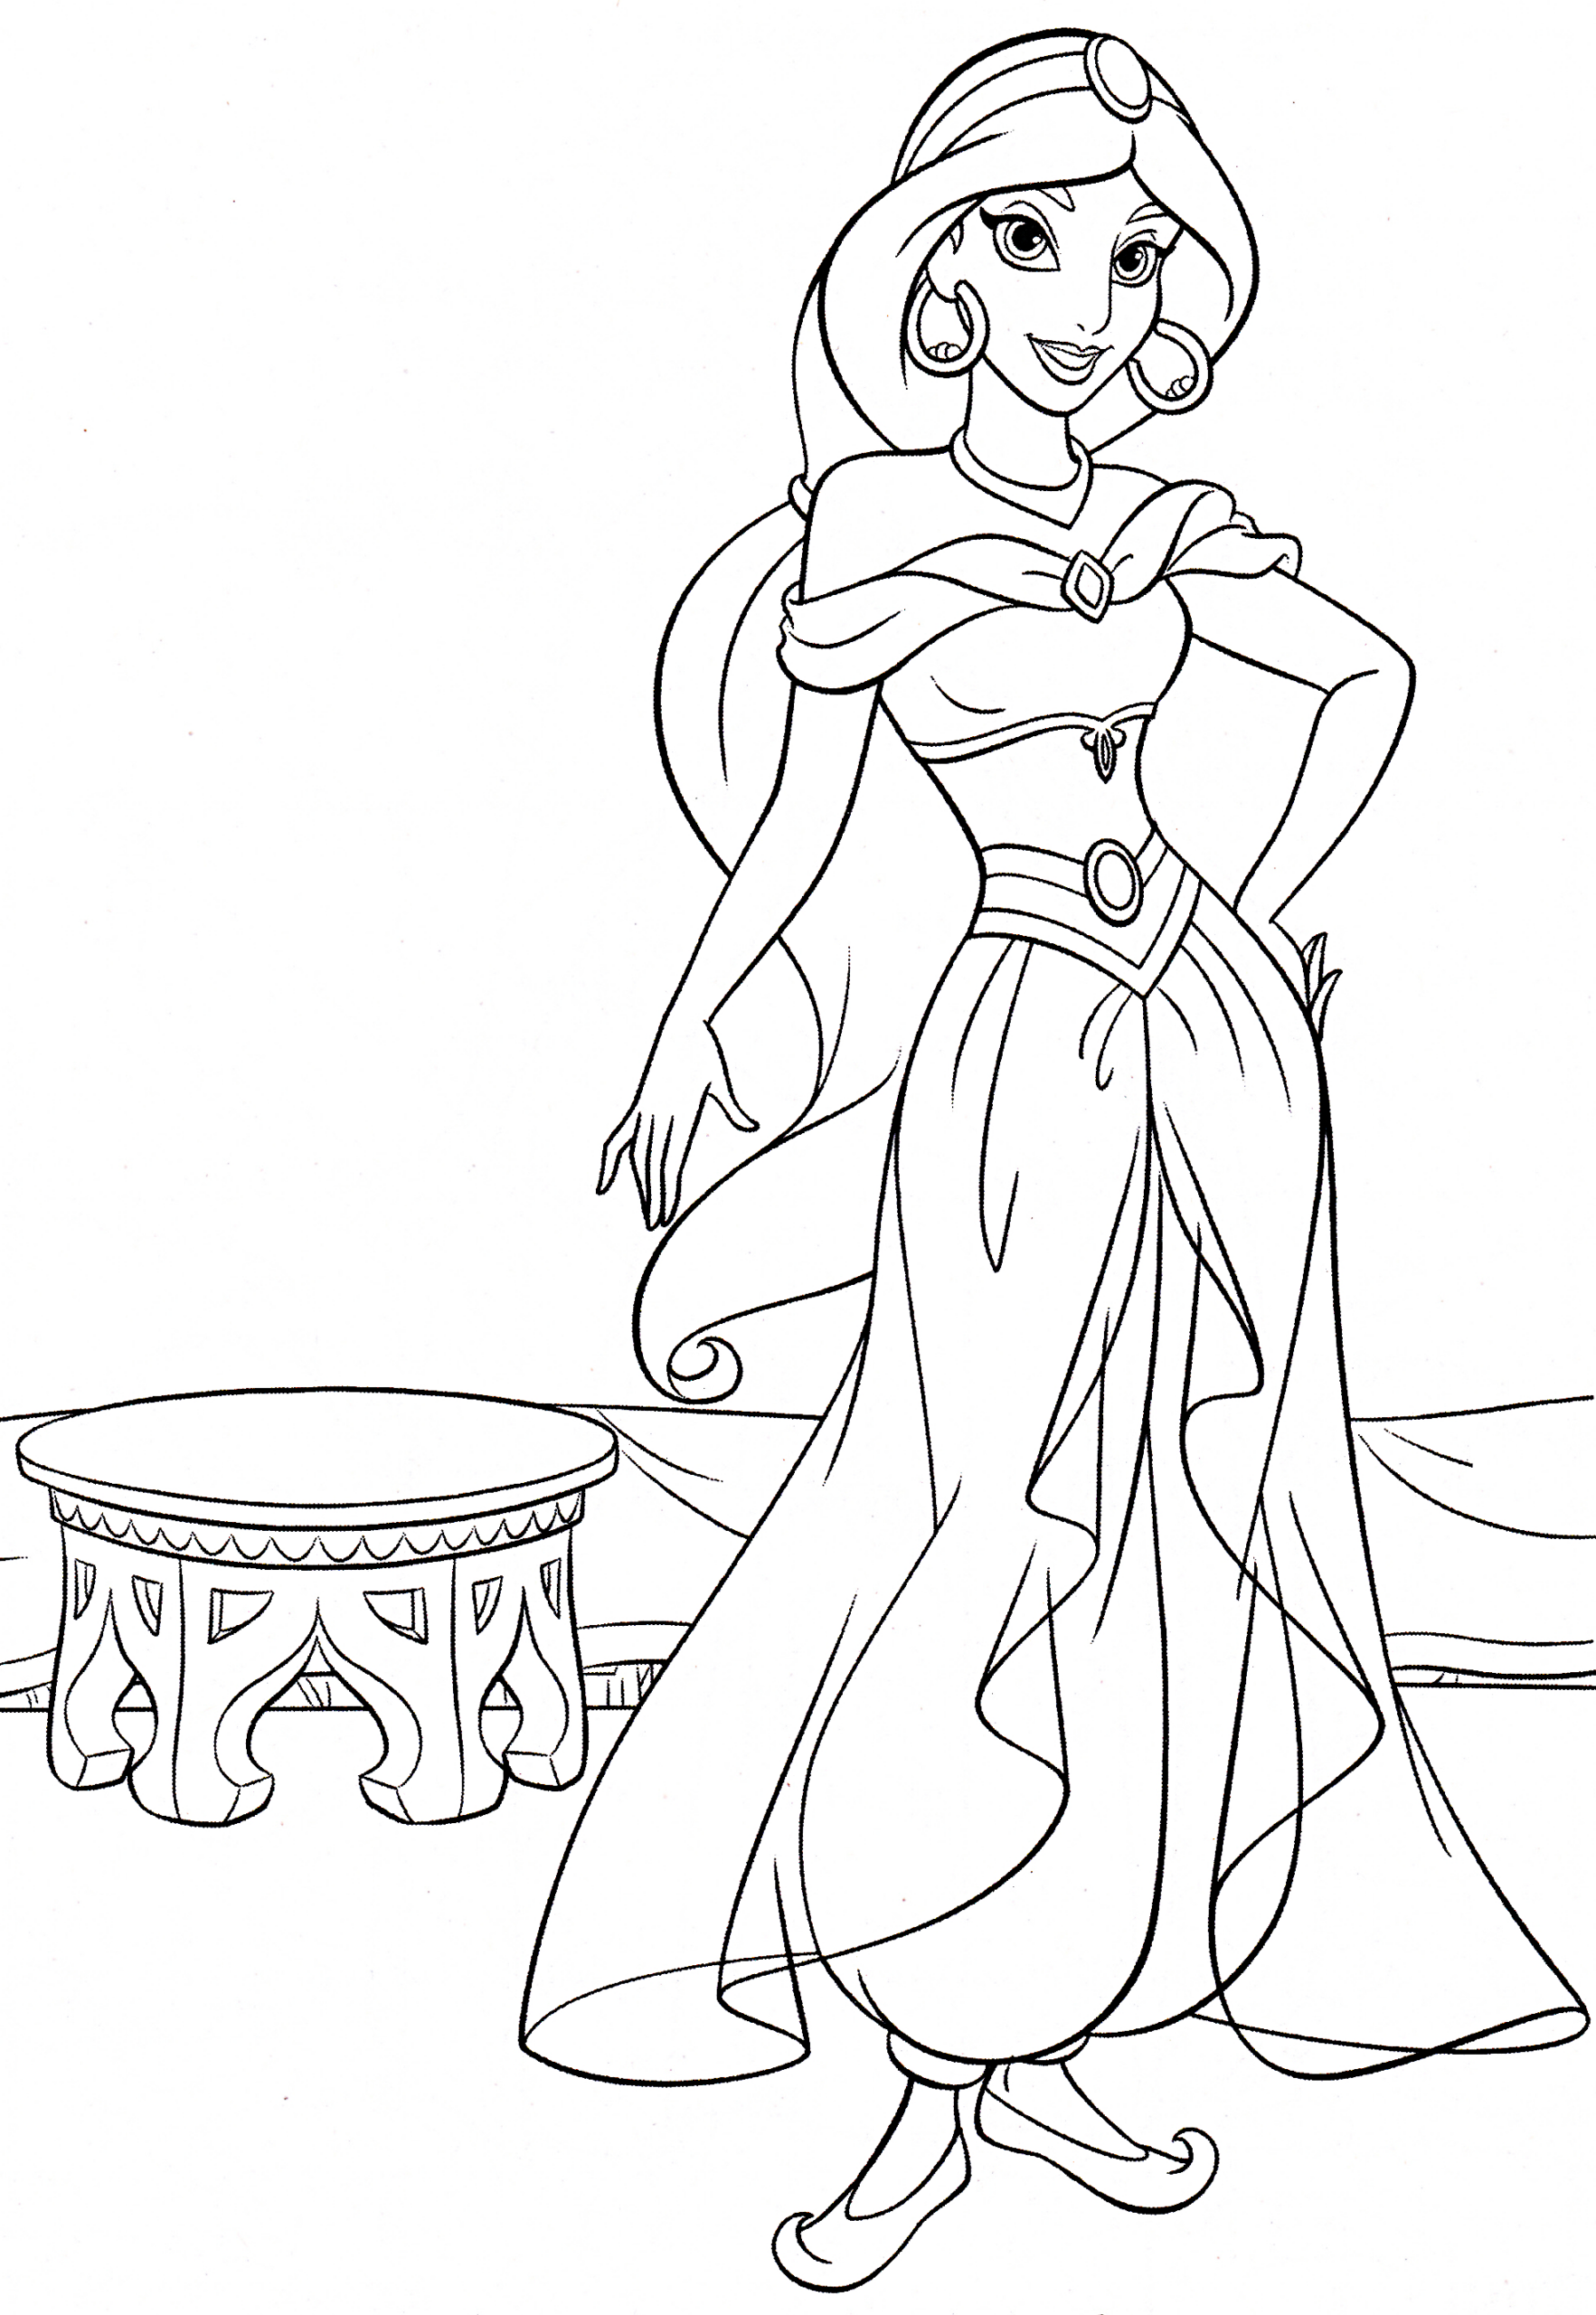 Walt Disney Coloring Pages - Princess Jasmine - Walt Disney Characters pour Dessin De Jasmine